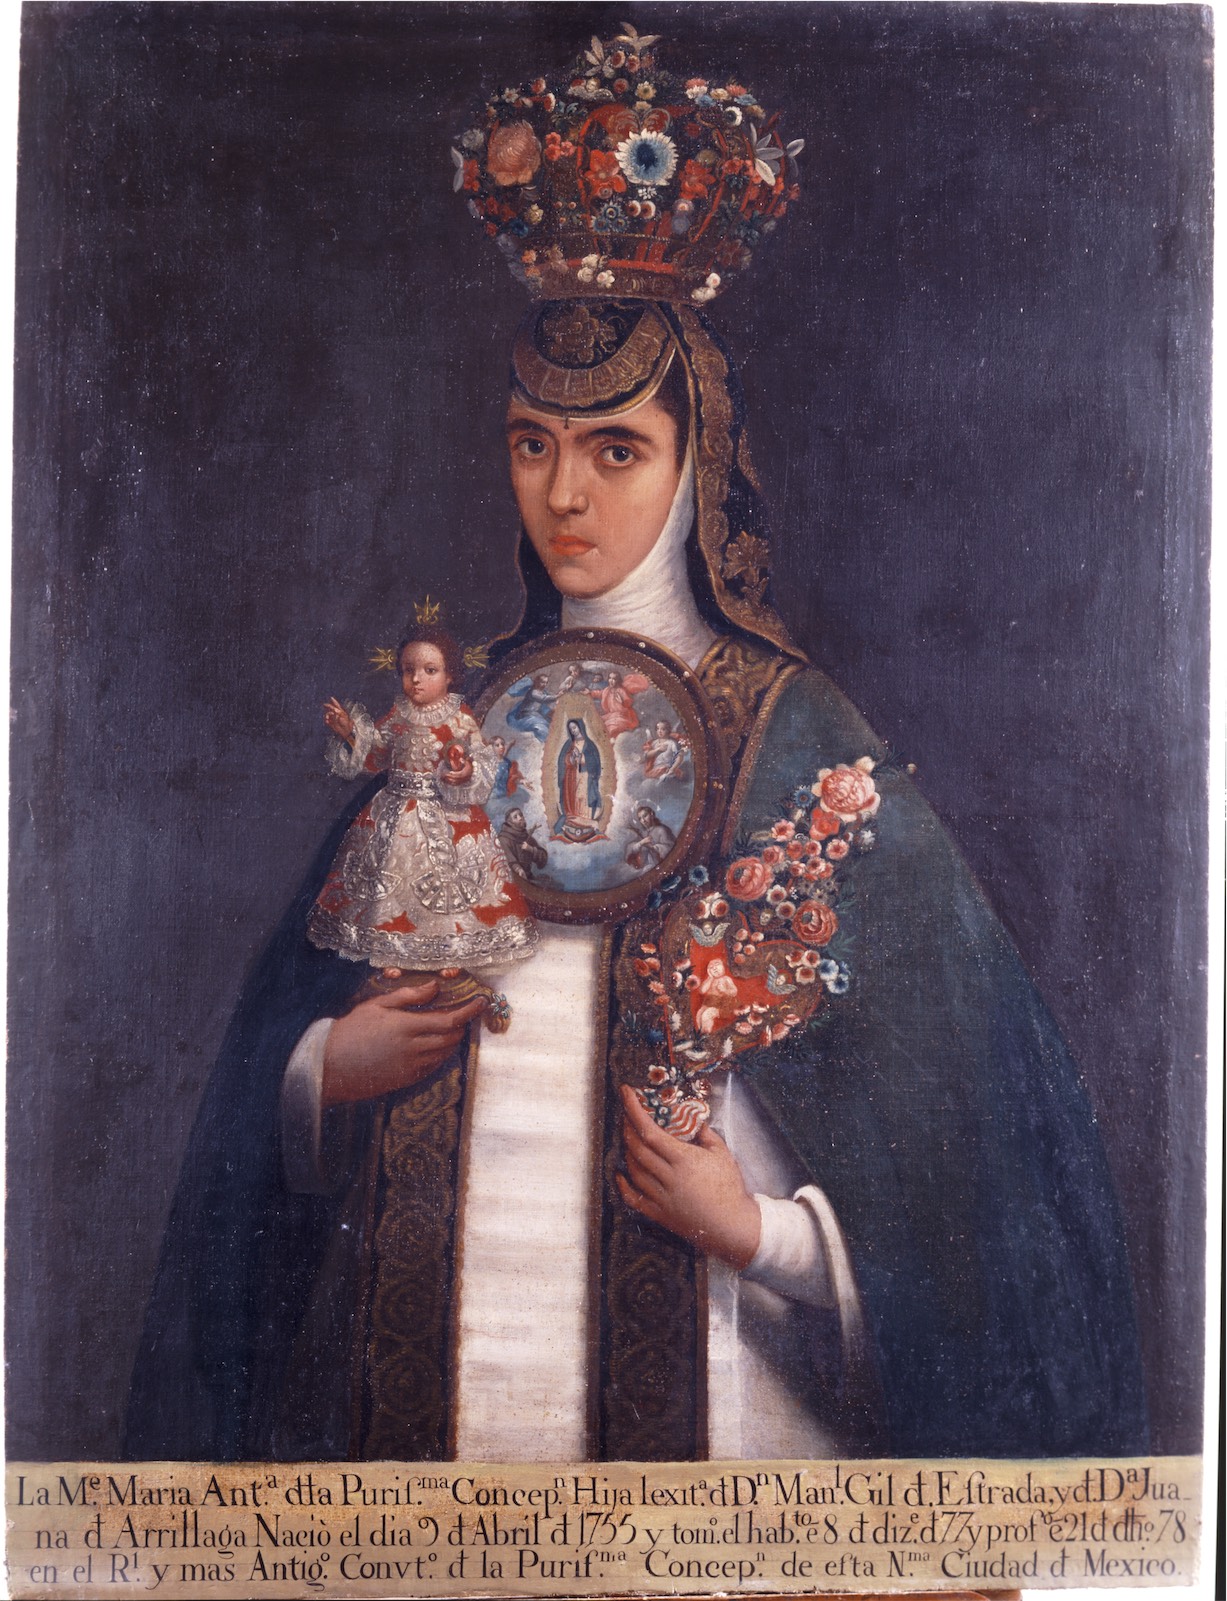 Sor María Antonia de la Purísima Concepción